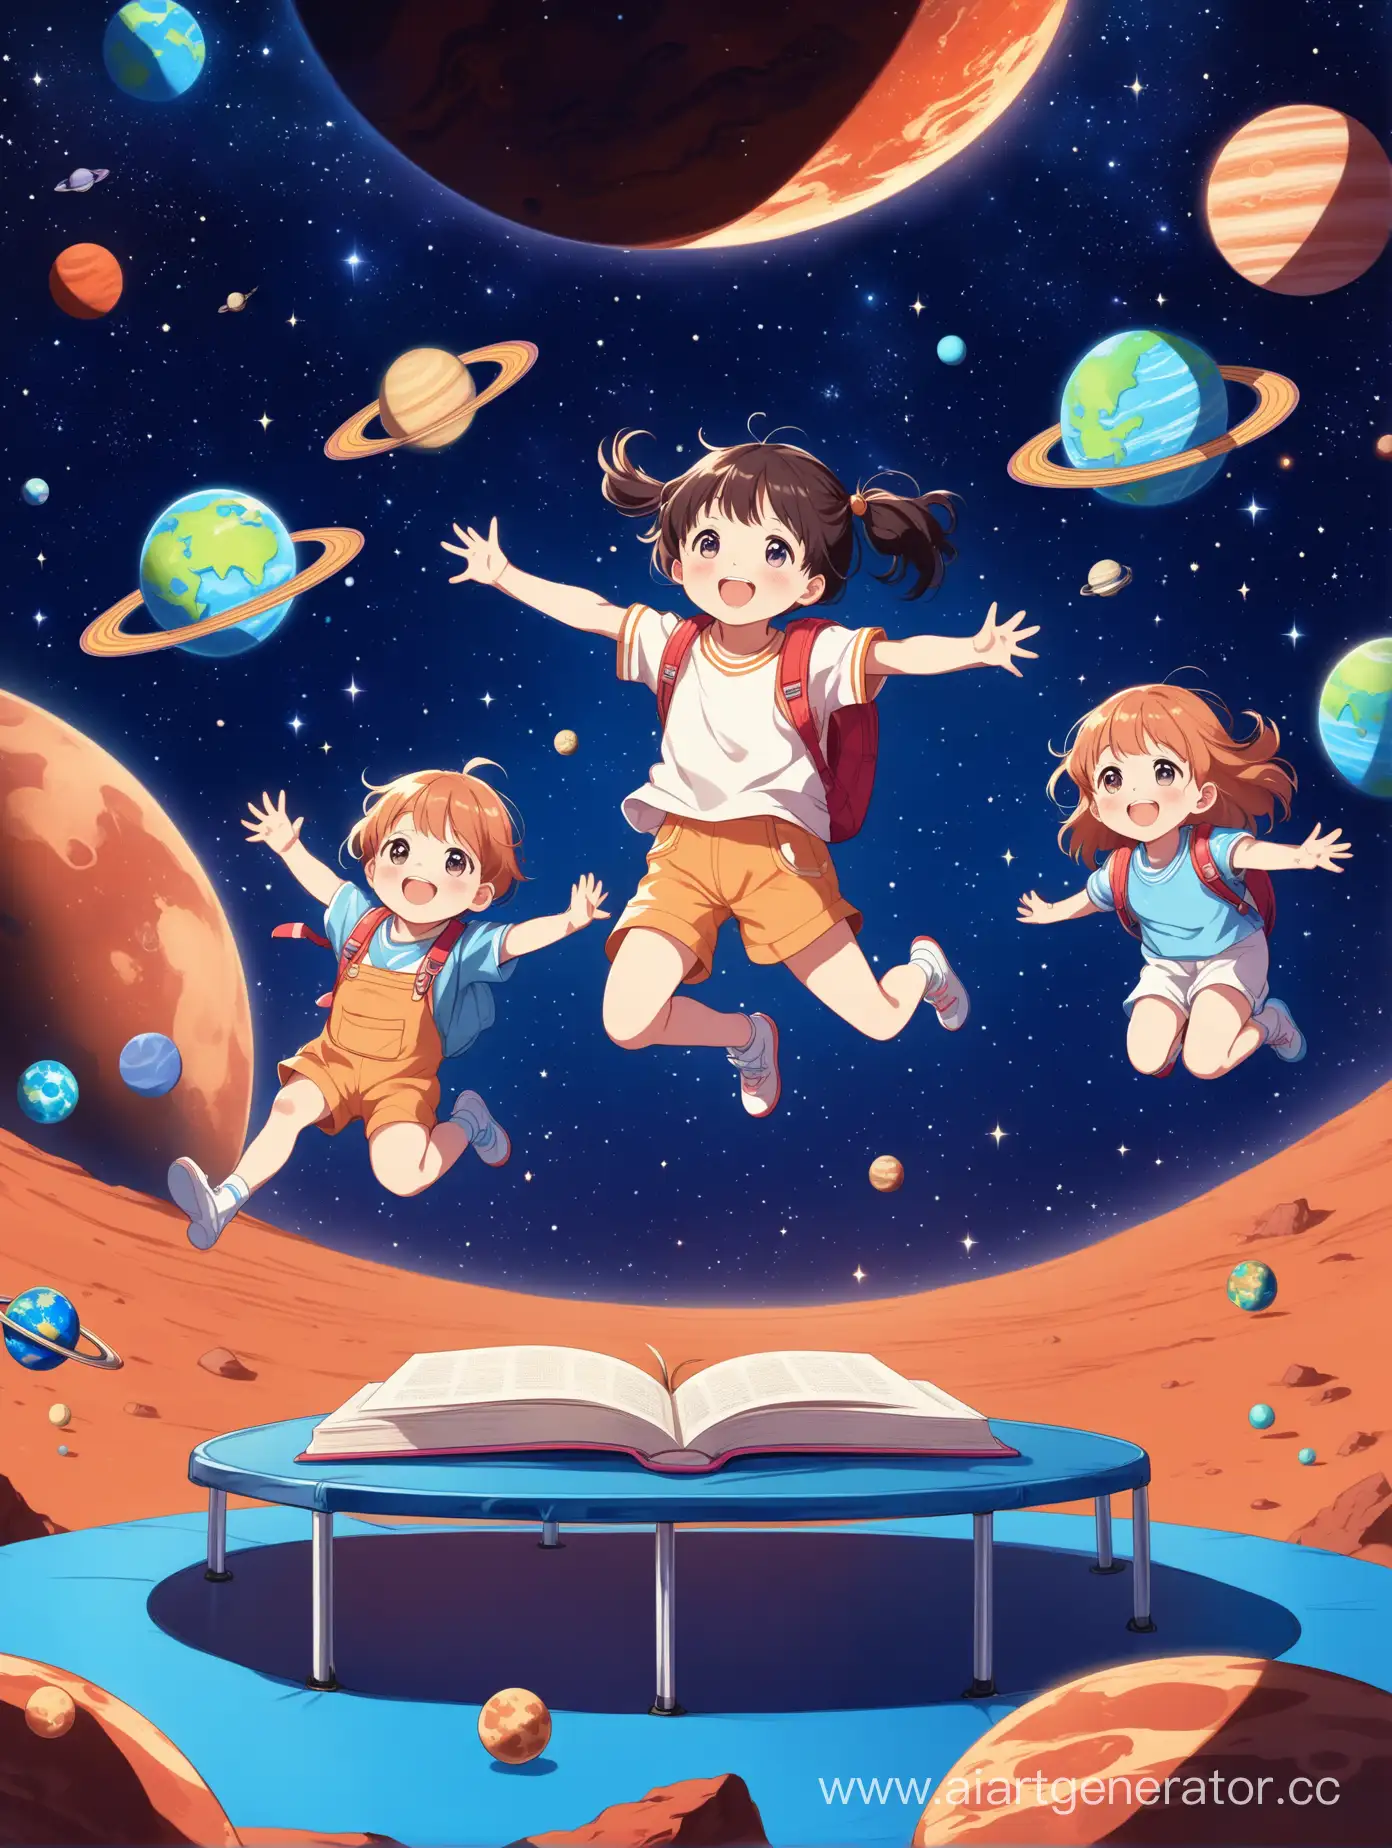 Радостные дети прыгают на батутах, локация планета Марс, звёздное небо с яркими планетами, вокруг каждого ребёнка кружатся учебники, хорошее освещение, 8К.